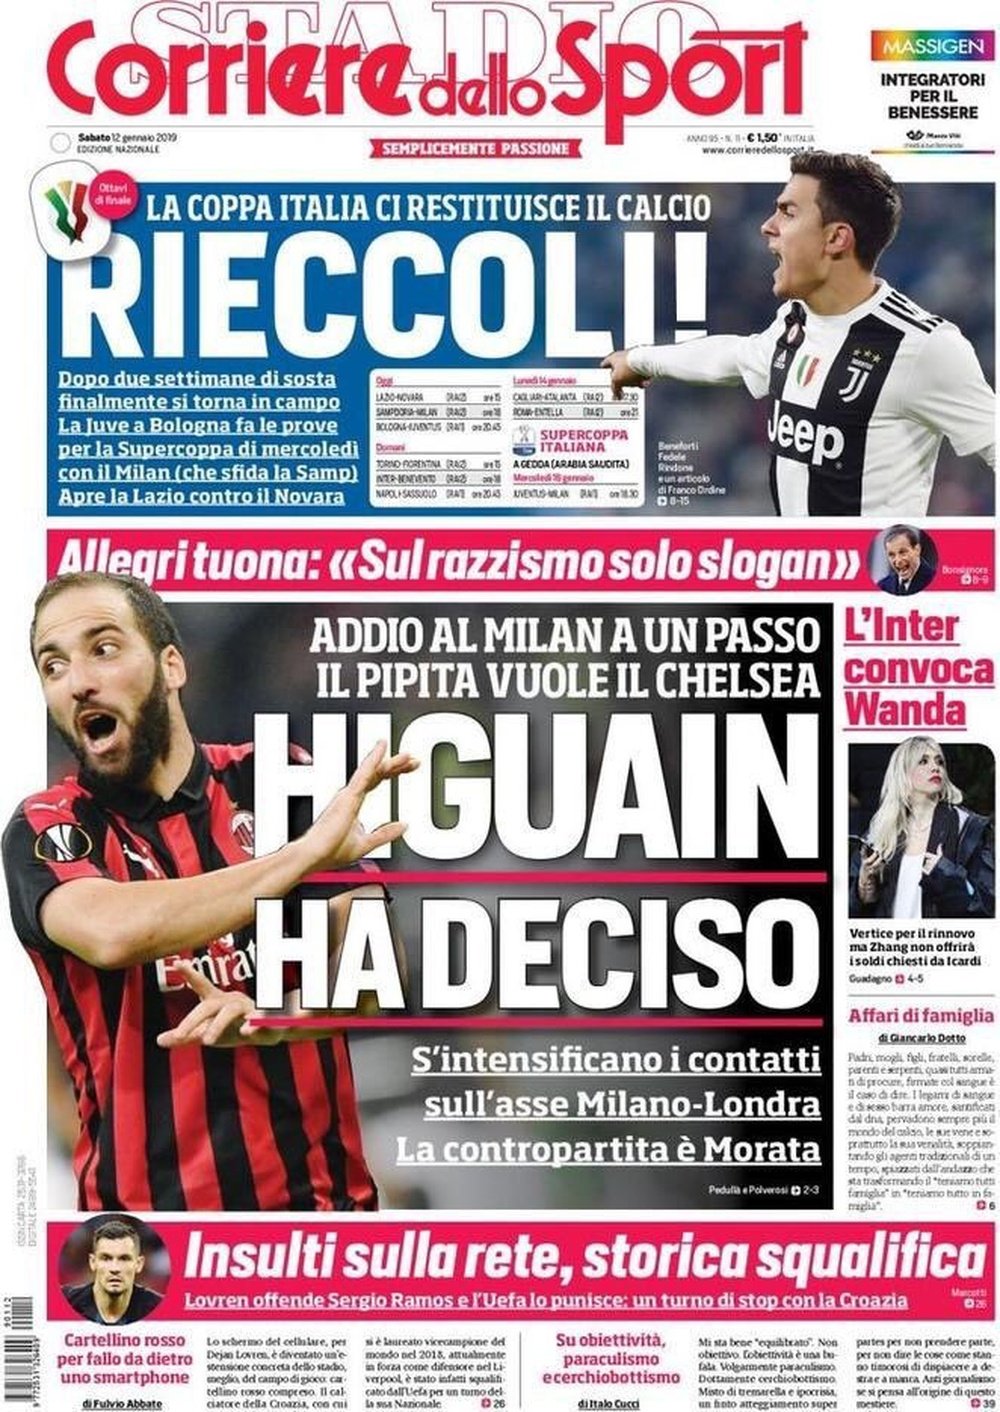 Colocan a Higuaín en el Chelsea y a Morata en el Milan. CorrieredelloSport